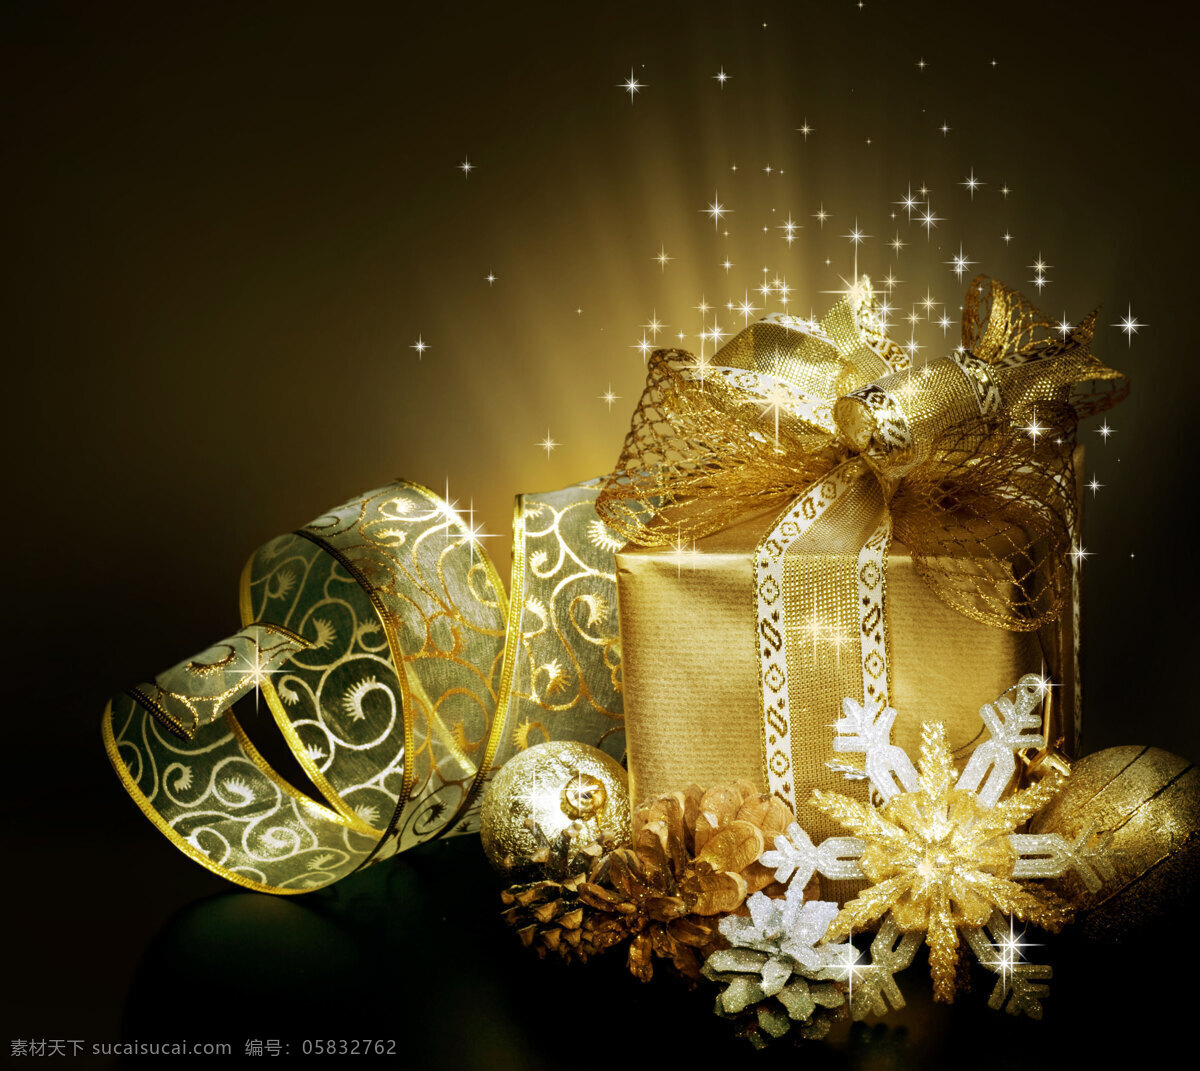 时尚 典雅 高端 节日 礼品盒 包装 包装礼盒 礼品 礼物 圣诞节 时尚典雅 高端礼品盒 礼盒包装素材 礼盒展示 橱窗礼盒